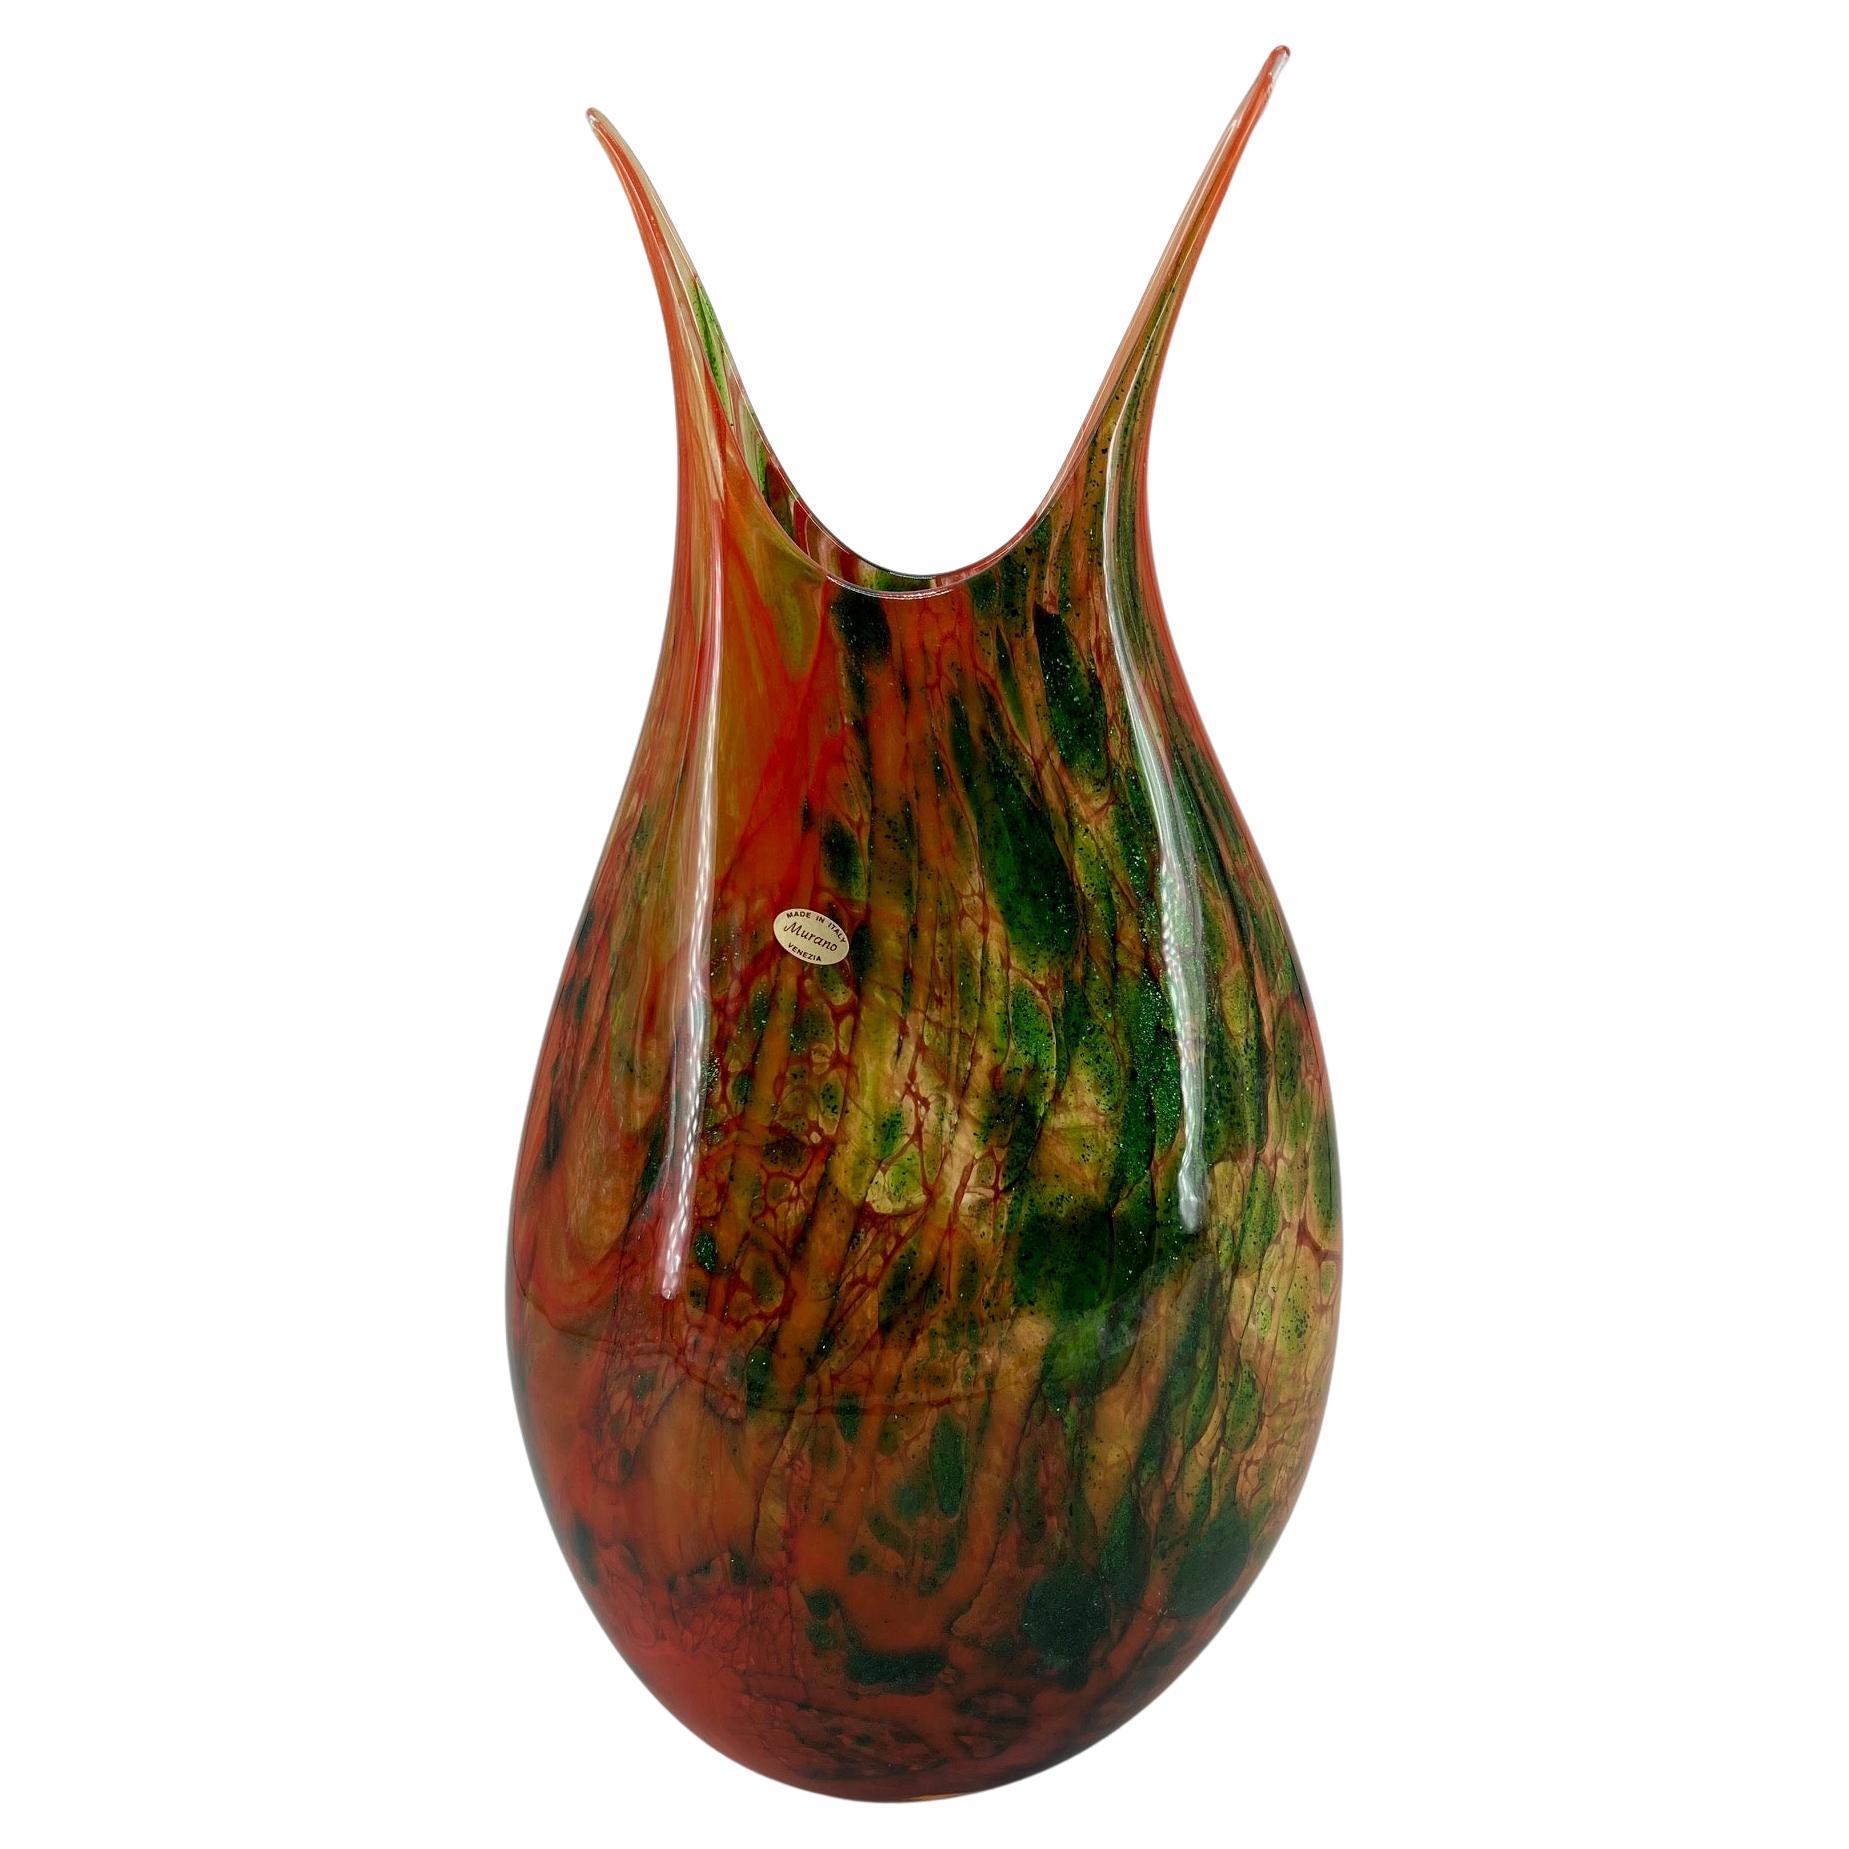 1295 Murano Hand made Avventurina glass Vase